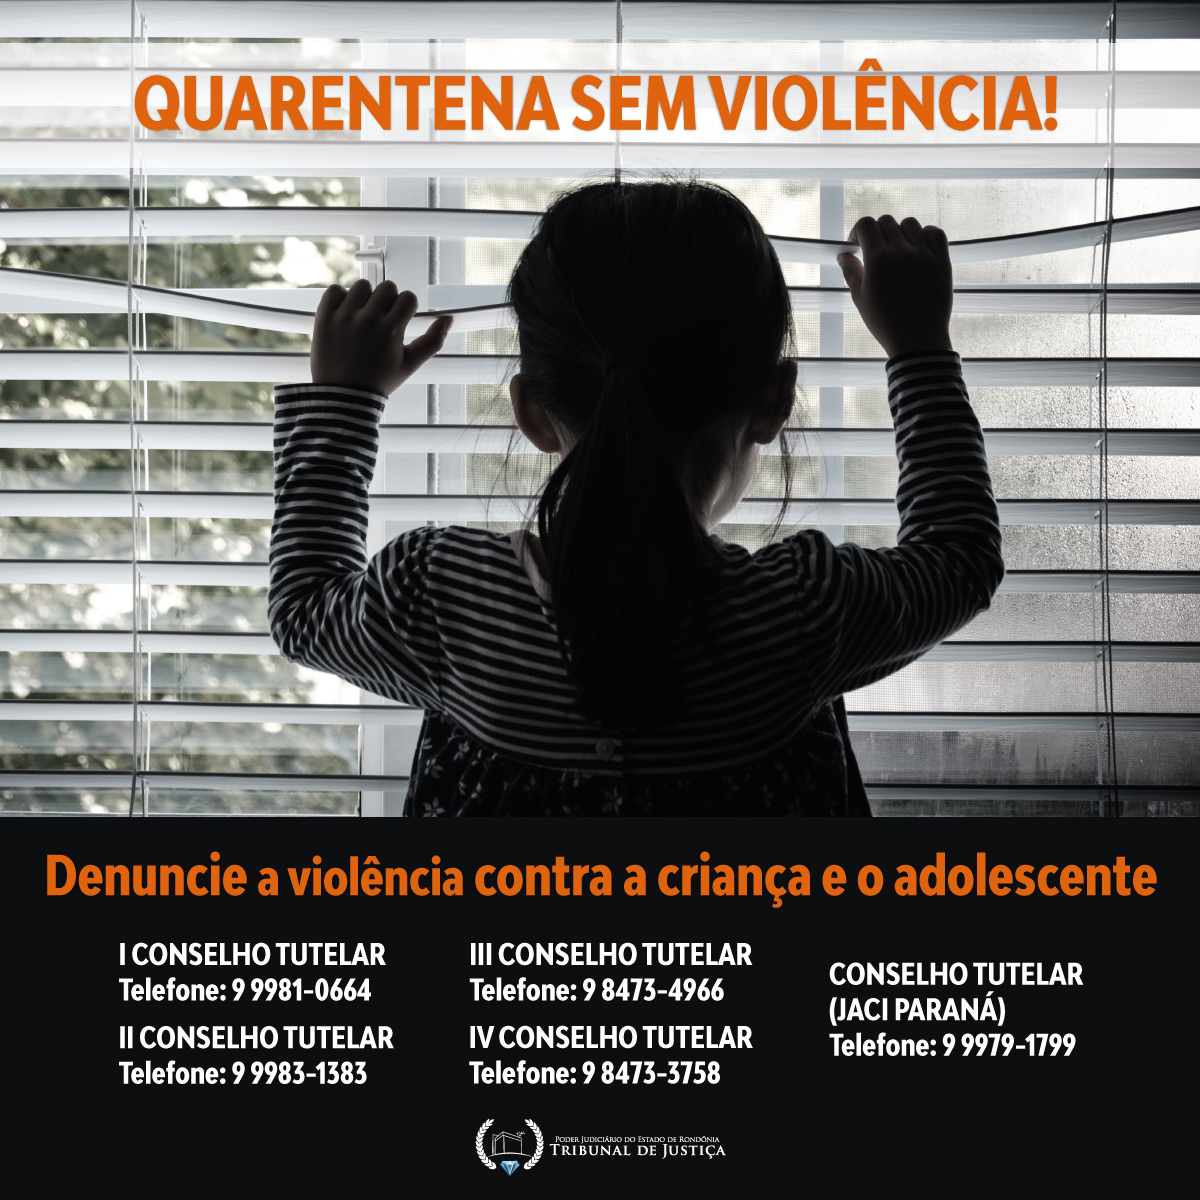 Você está visualizando atualmente Campanha alerta sobre violência contra crianças e adolescentes durante pandemia